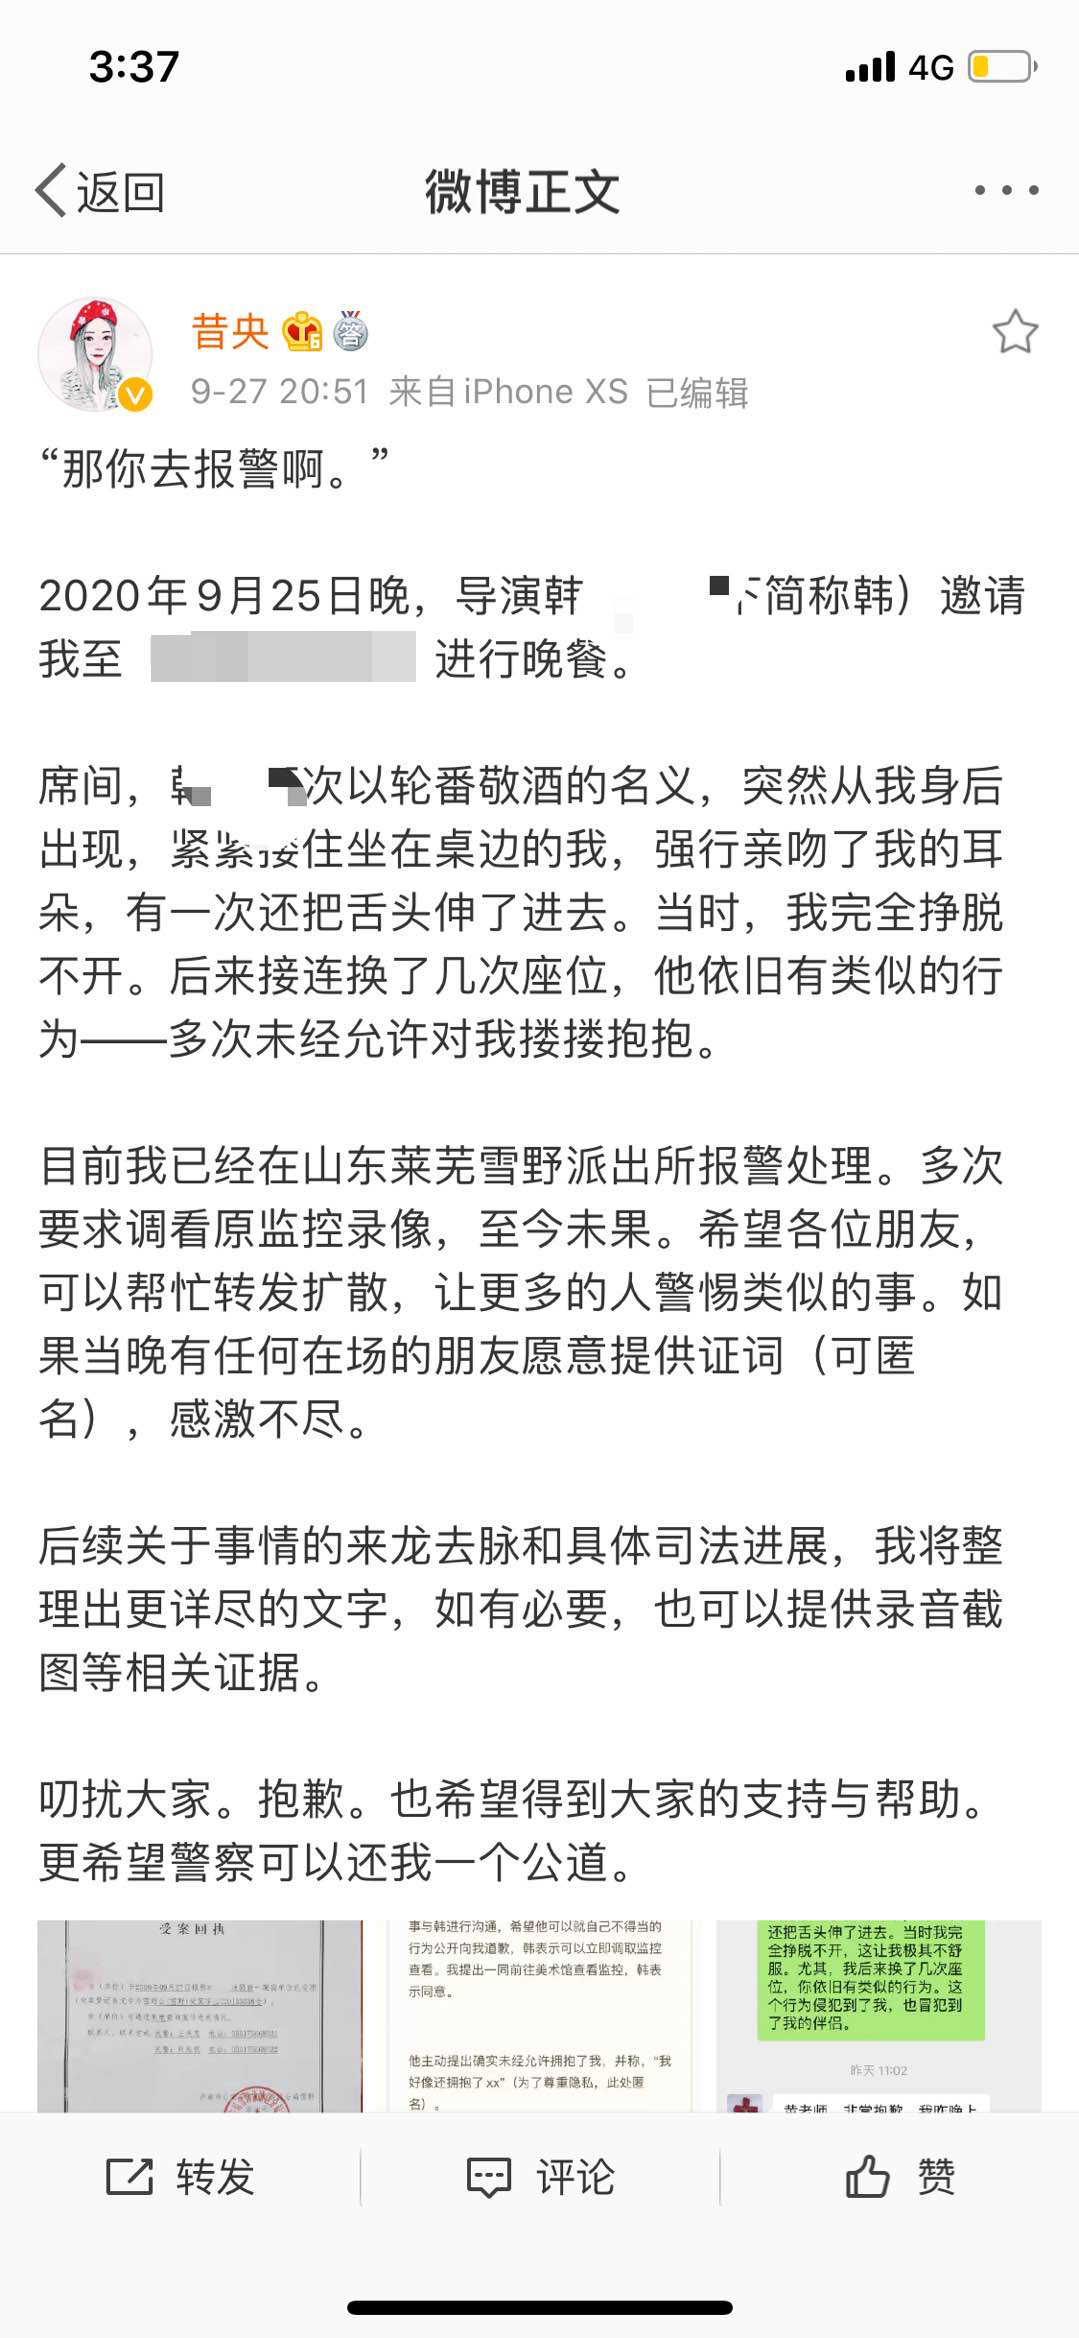 微博认证为作家的用户“昔央”发微博称遭韩姓导演性骚扰。 微博截图